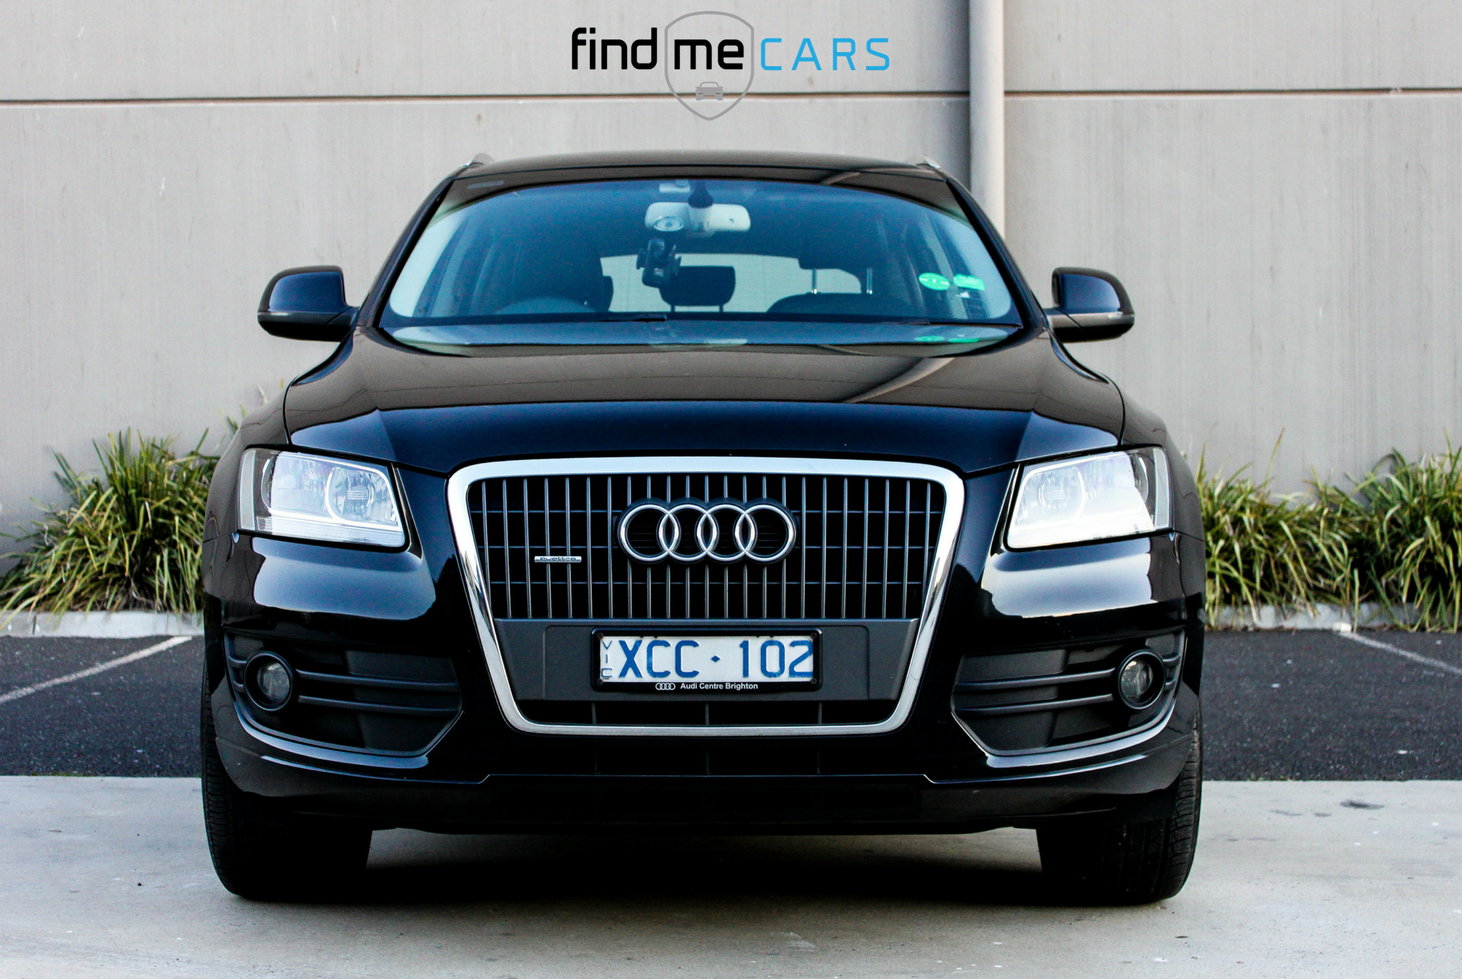 2009 Audi Q5 2.0 TDI Quattro - Find Me Cars